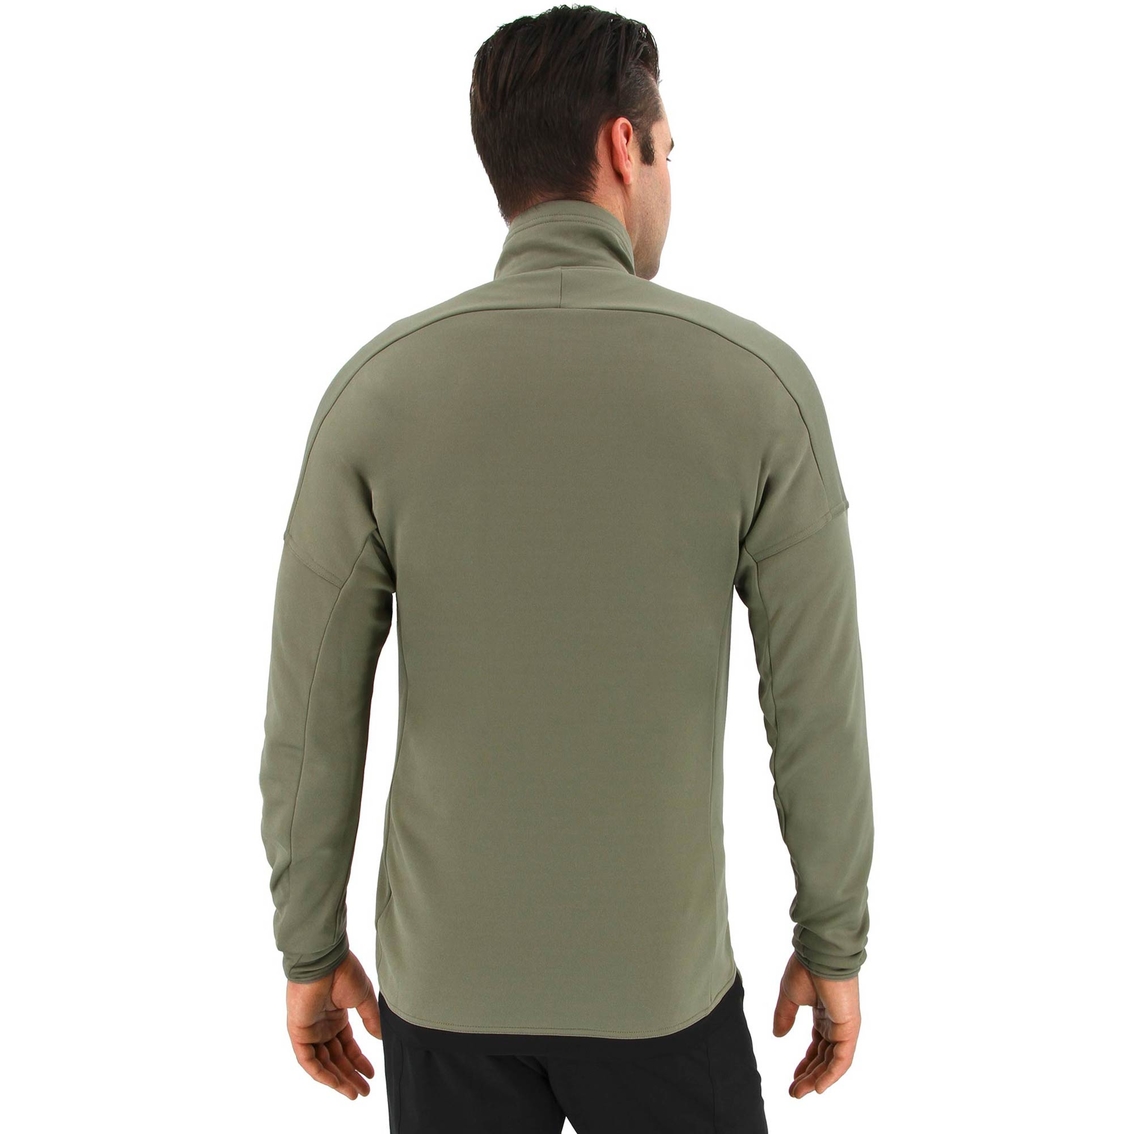 Adidas Outdoor Terrex Tivid Half Zip Fleece Shirt - Image 2 of 2